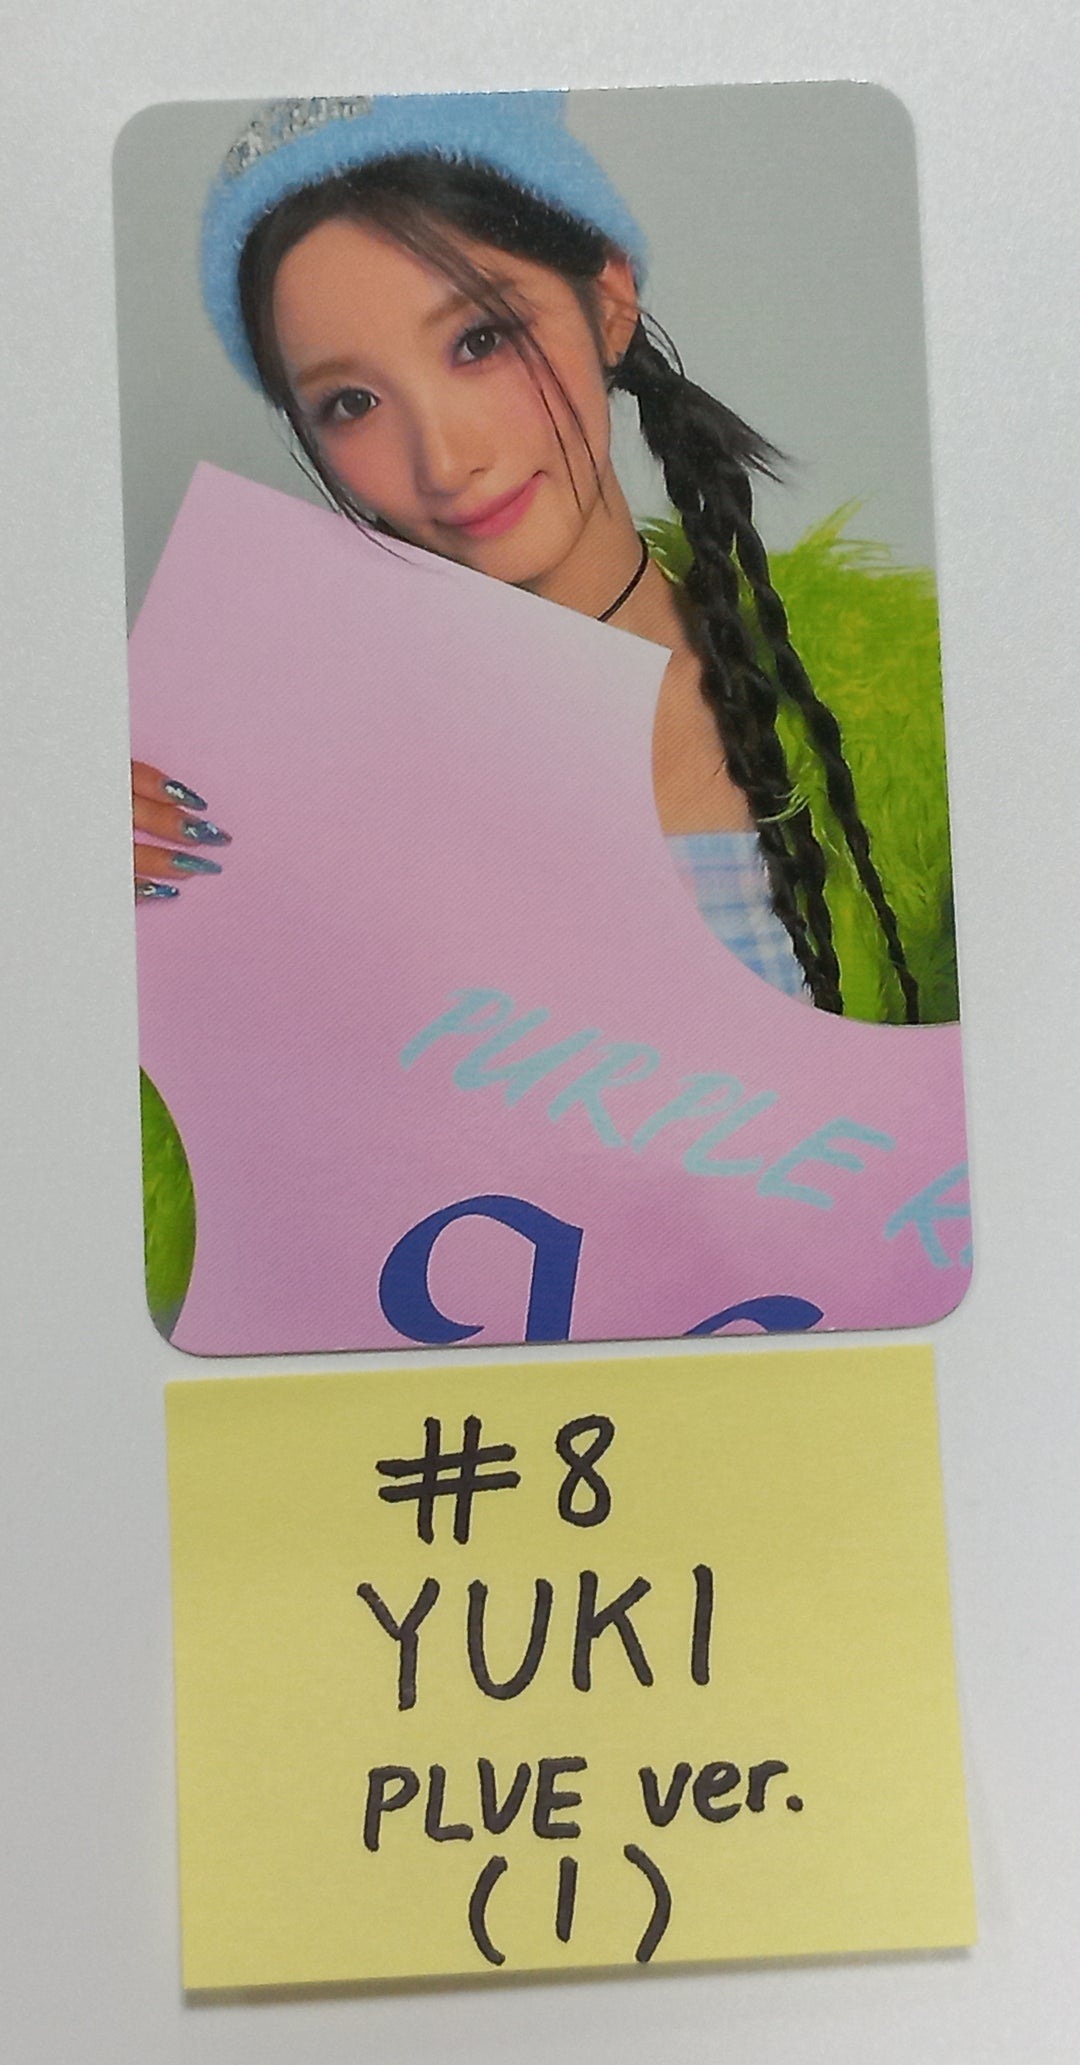 EL7Z U+P "7+UP" - Official  Photocard, Image Card [PLVE Ver] [23.09.21]